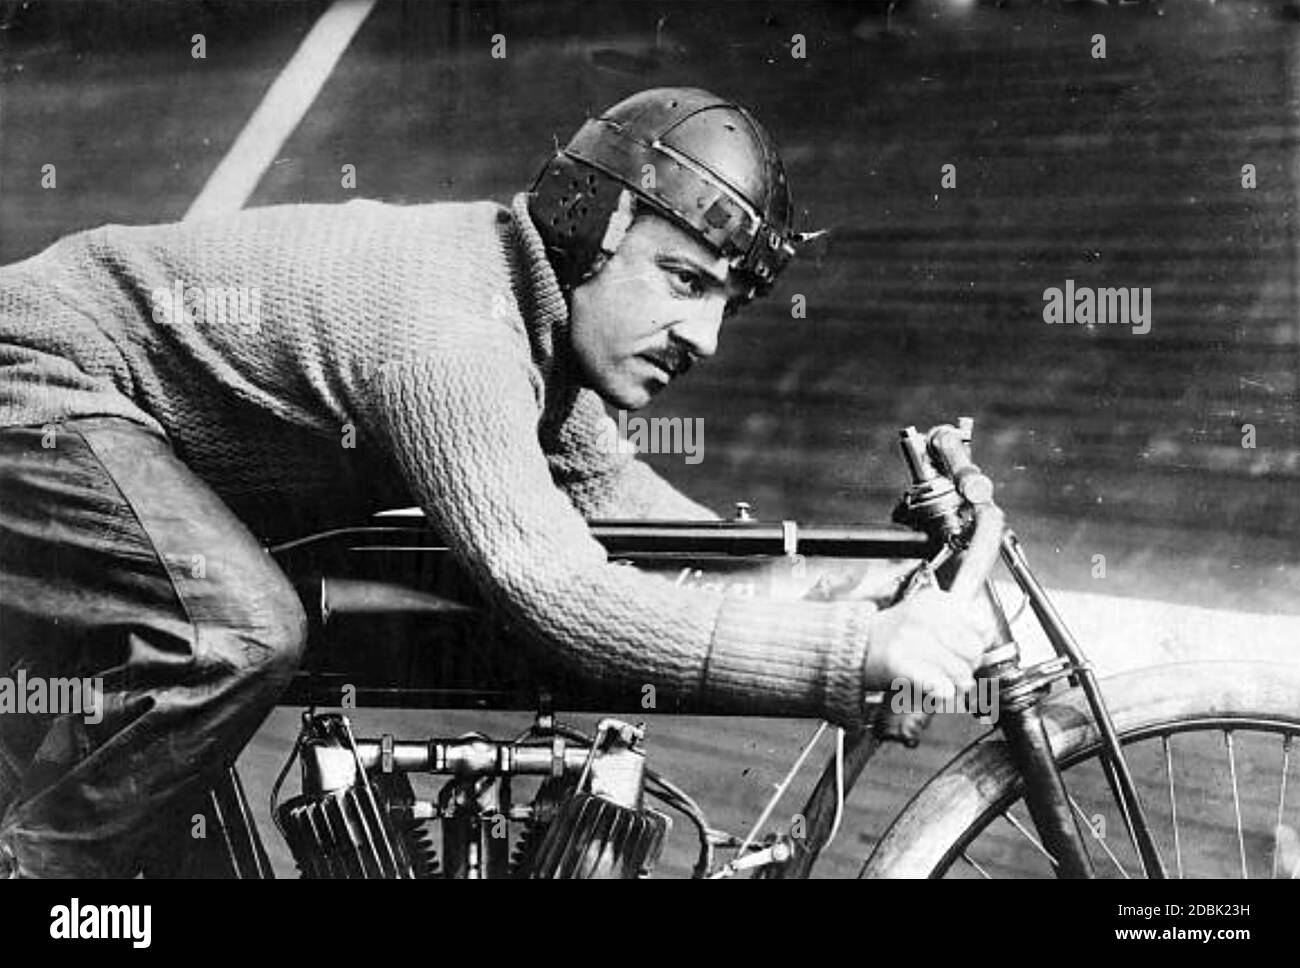 ANDRÉ GRAPPERON motociclista francese su una moto indiana nel 1913. Foto: Servizio Notizie Baines. Foto Stock